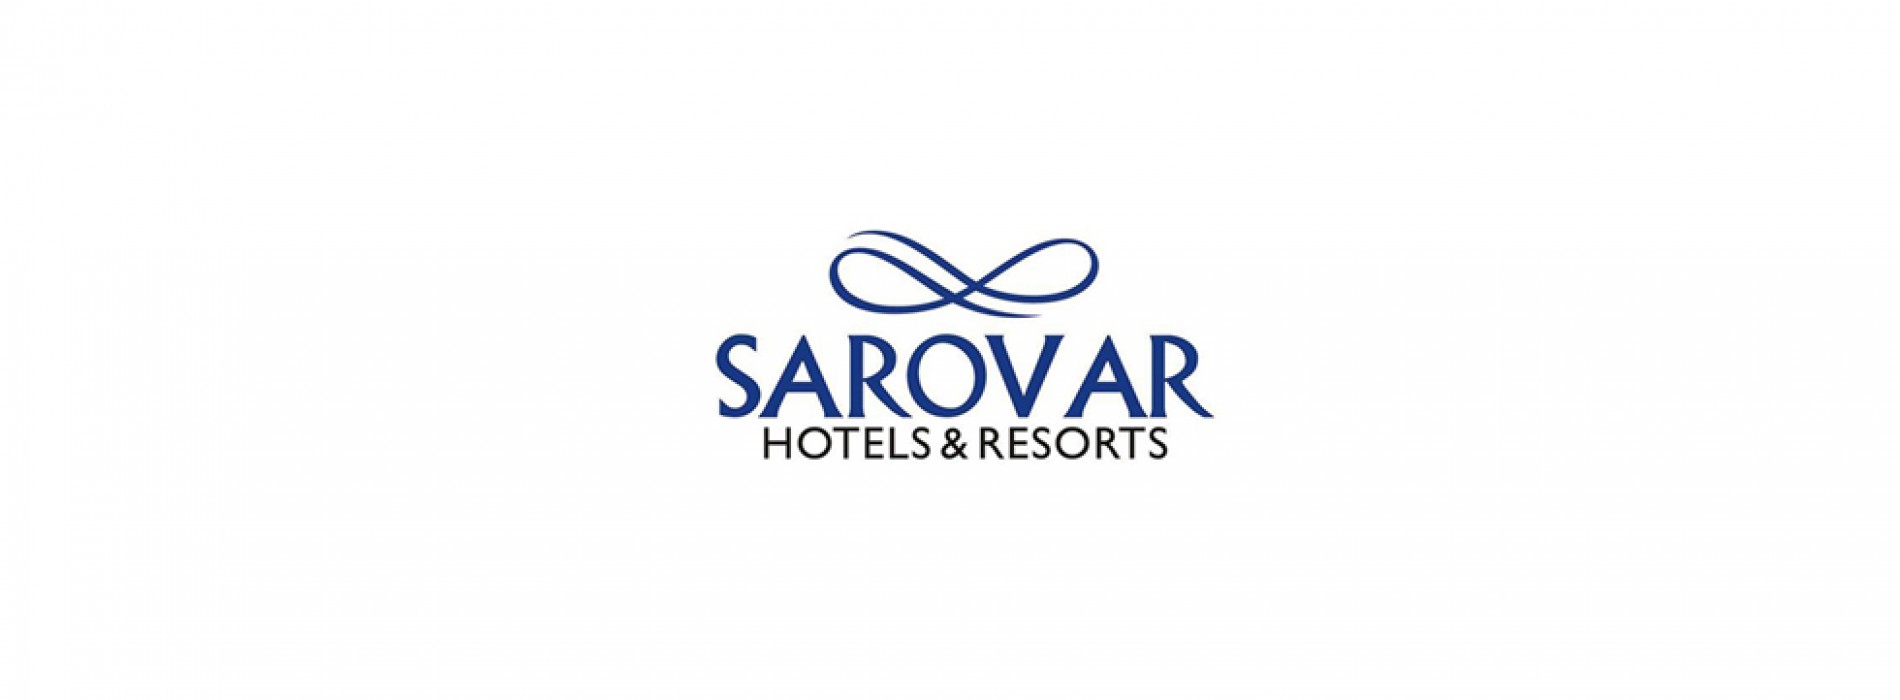 22nd Annual Meet of Sarovar Hotels held in Tirupati